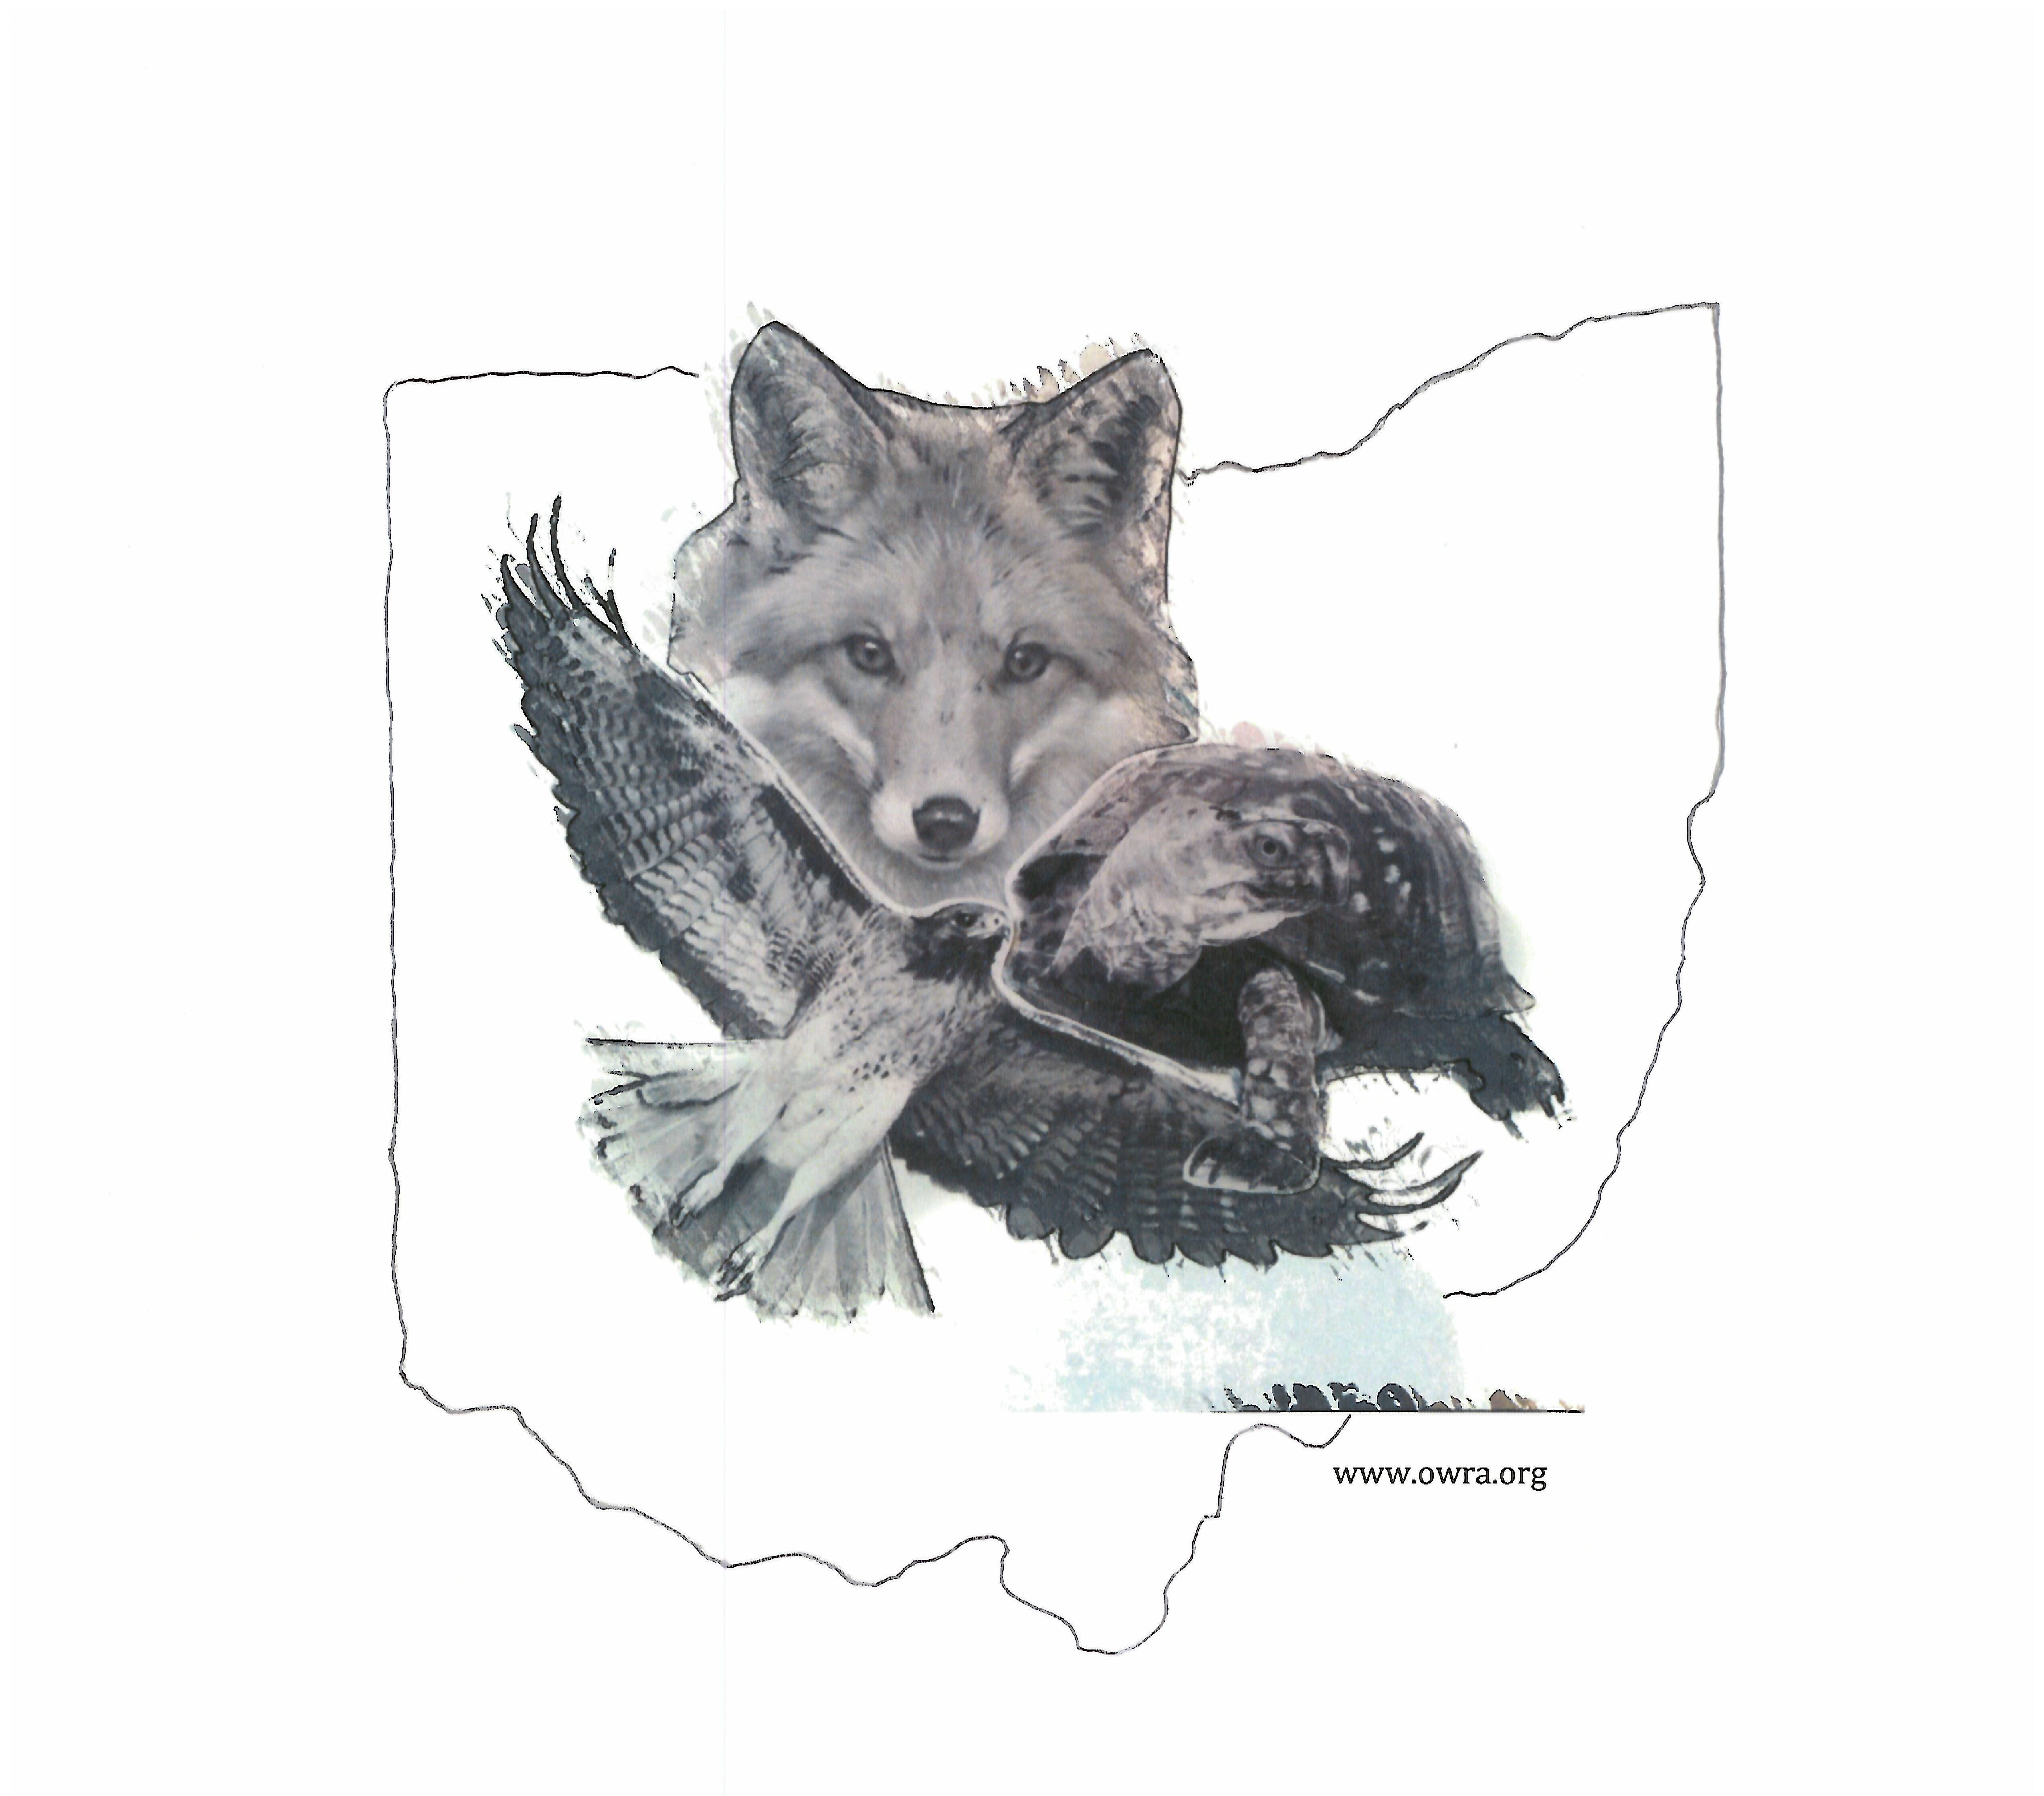 Ohio Wildlife Rehabilitators Association